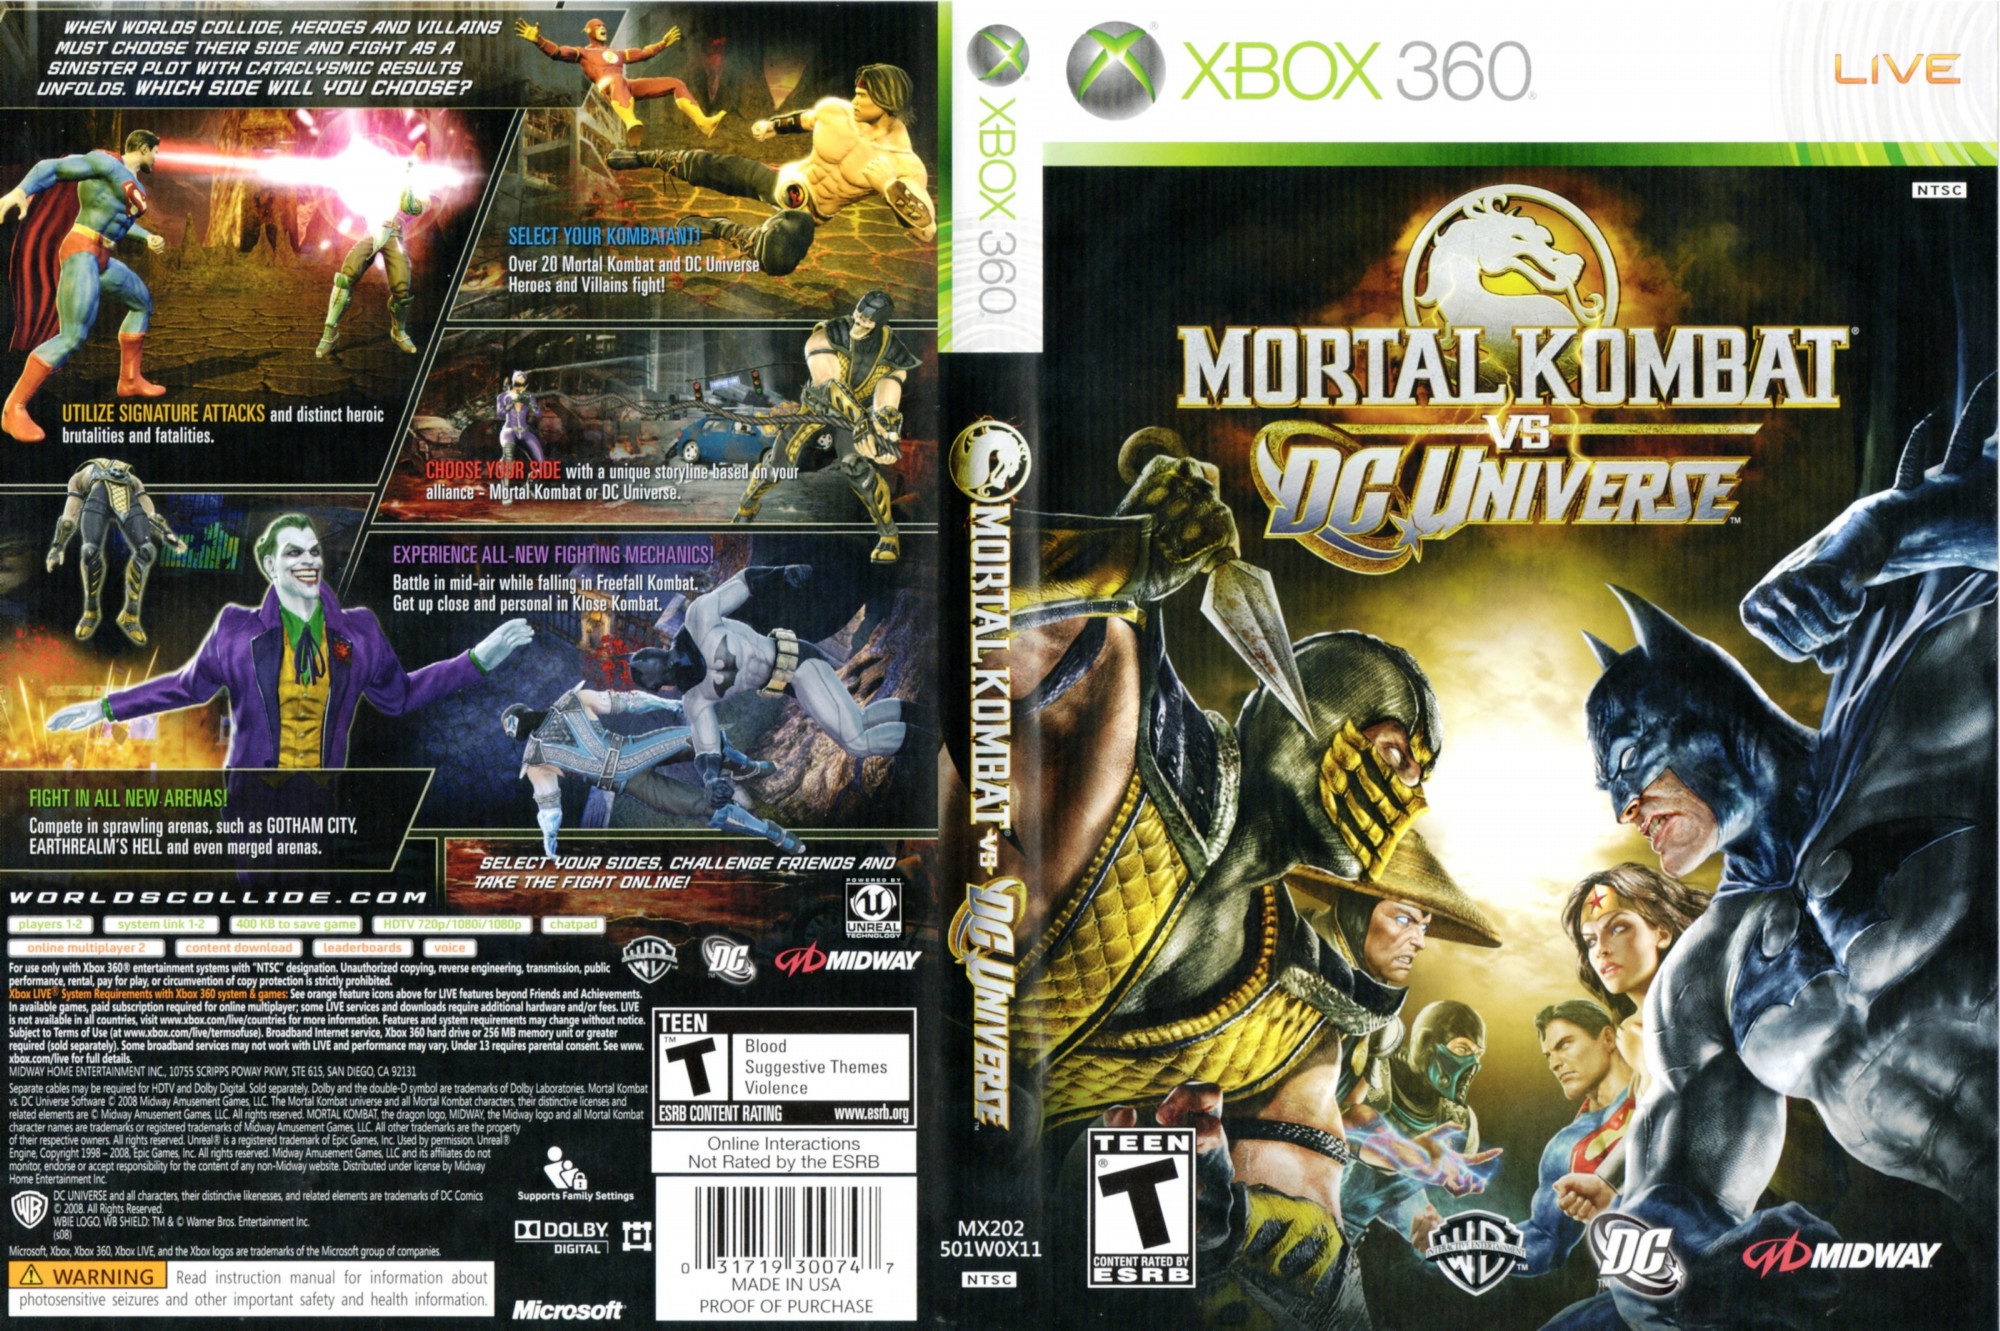 Mortal Kombat VS DC Universe 2008 (Xbox 360) (gamerip) (2008) MP3 -  Download Mortal Kombat VS DC Universe 2008 (Xbox 360) (gamerip) (2008)  Soundtracks for FREE!